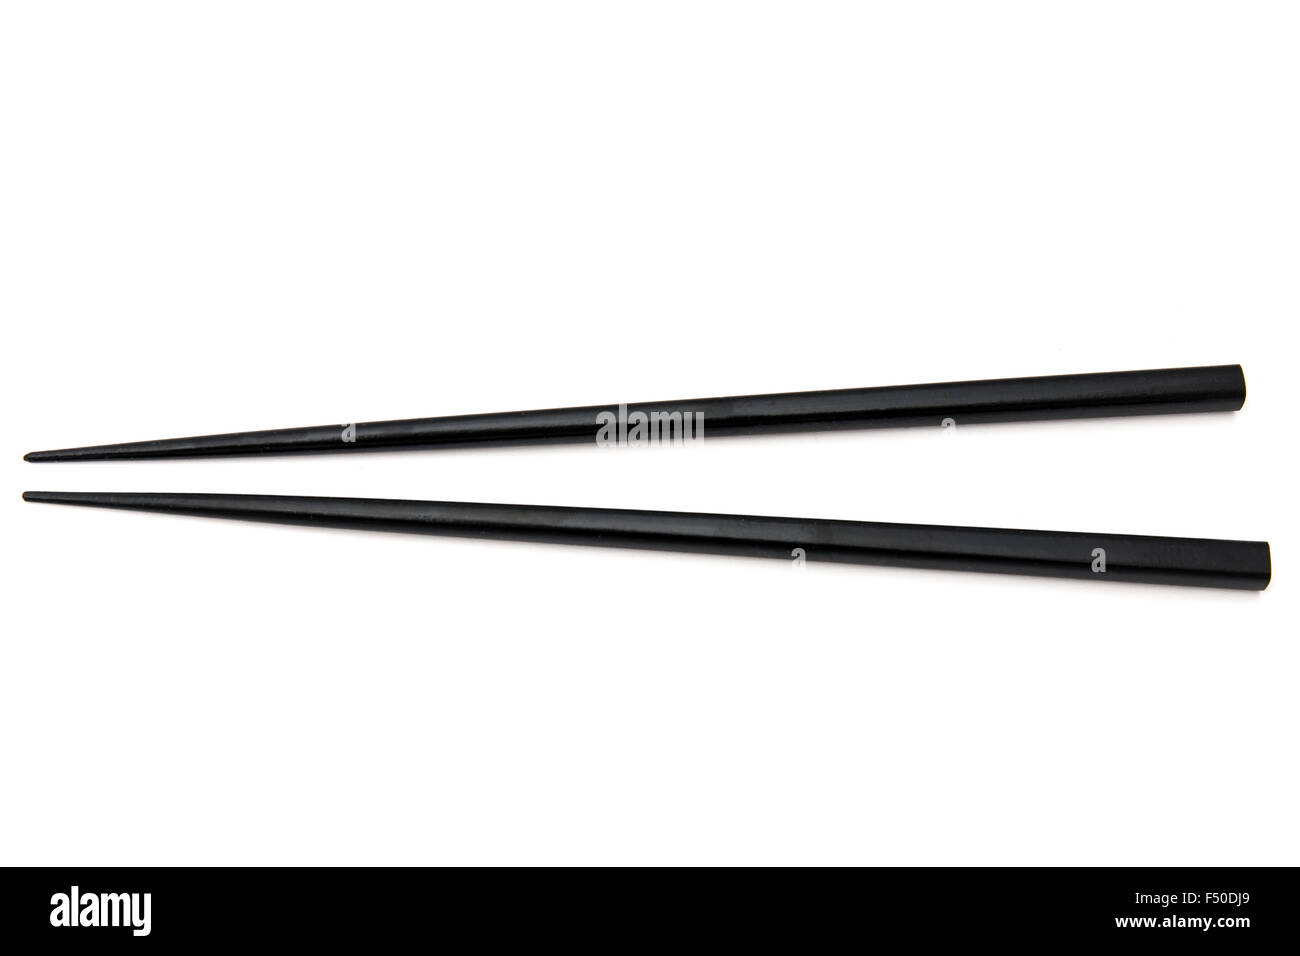 Black chopsticks isolated on white background Stock Photo